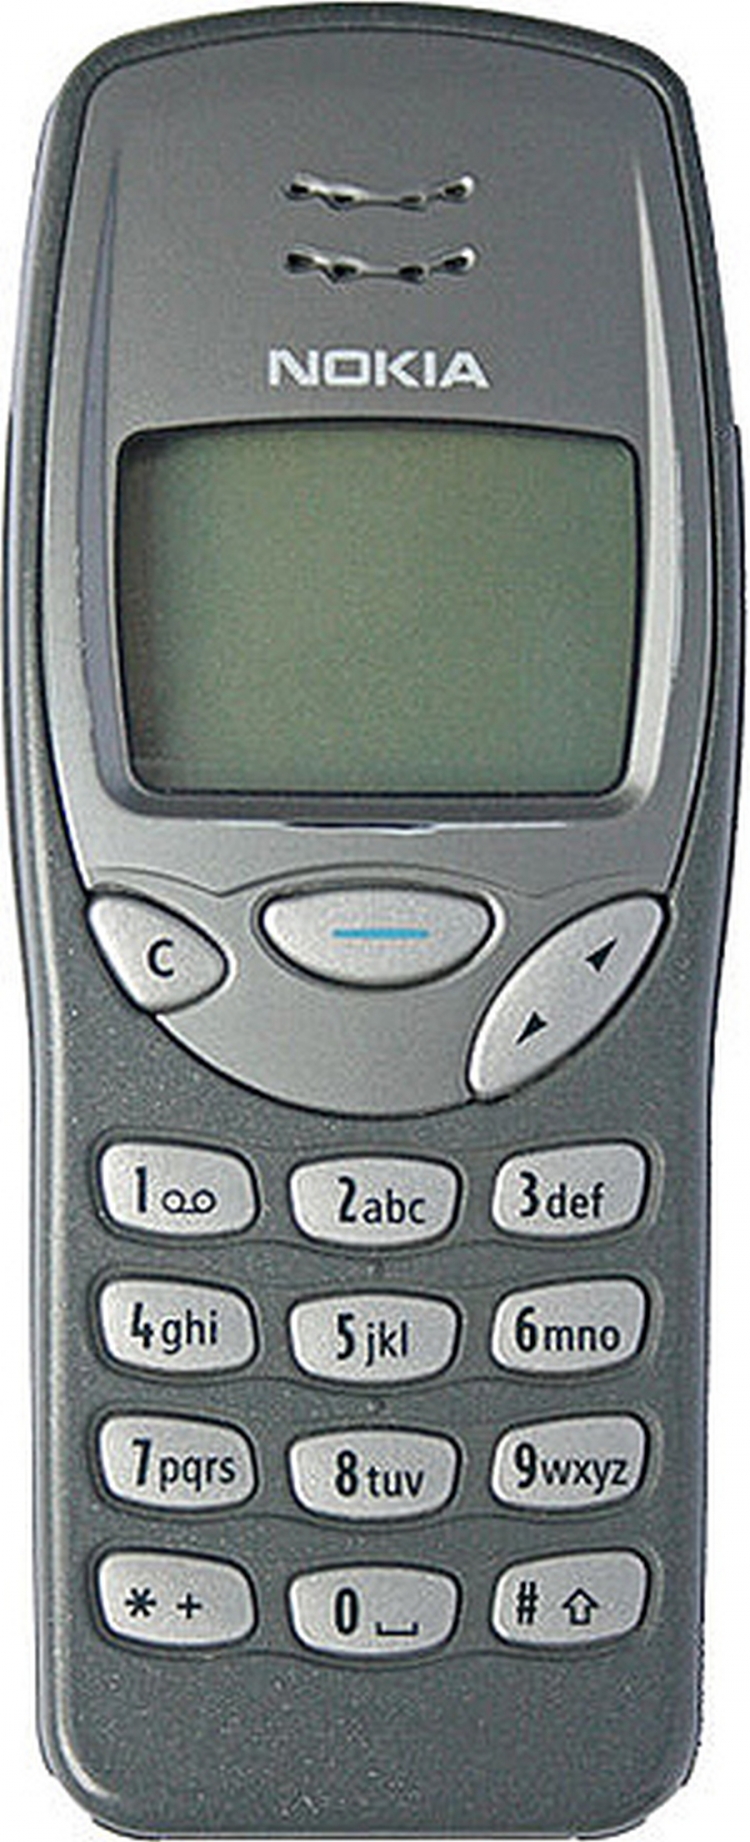 1999. godina - Nokia 3210 / Telefon sa internom antenom i T9 rječnikom za tekstualne poruke, koji je prodan u više od 160 miliona primjeraka.